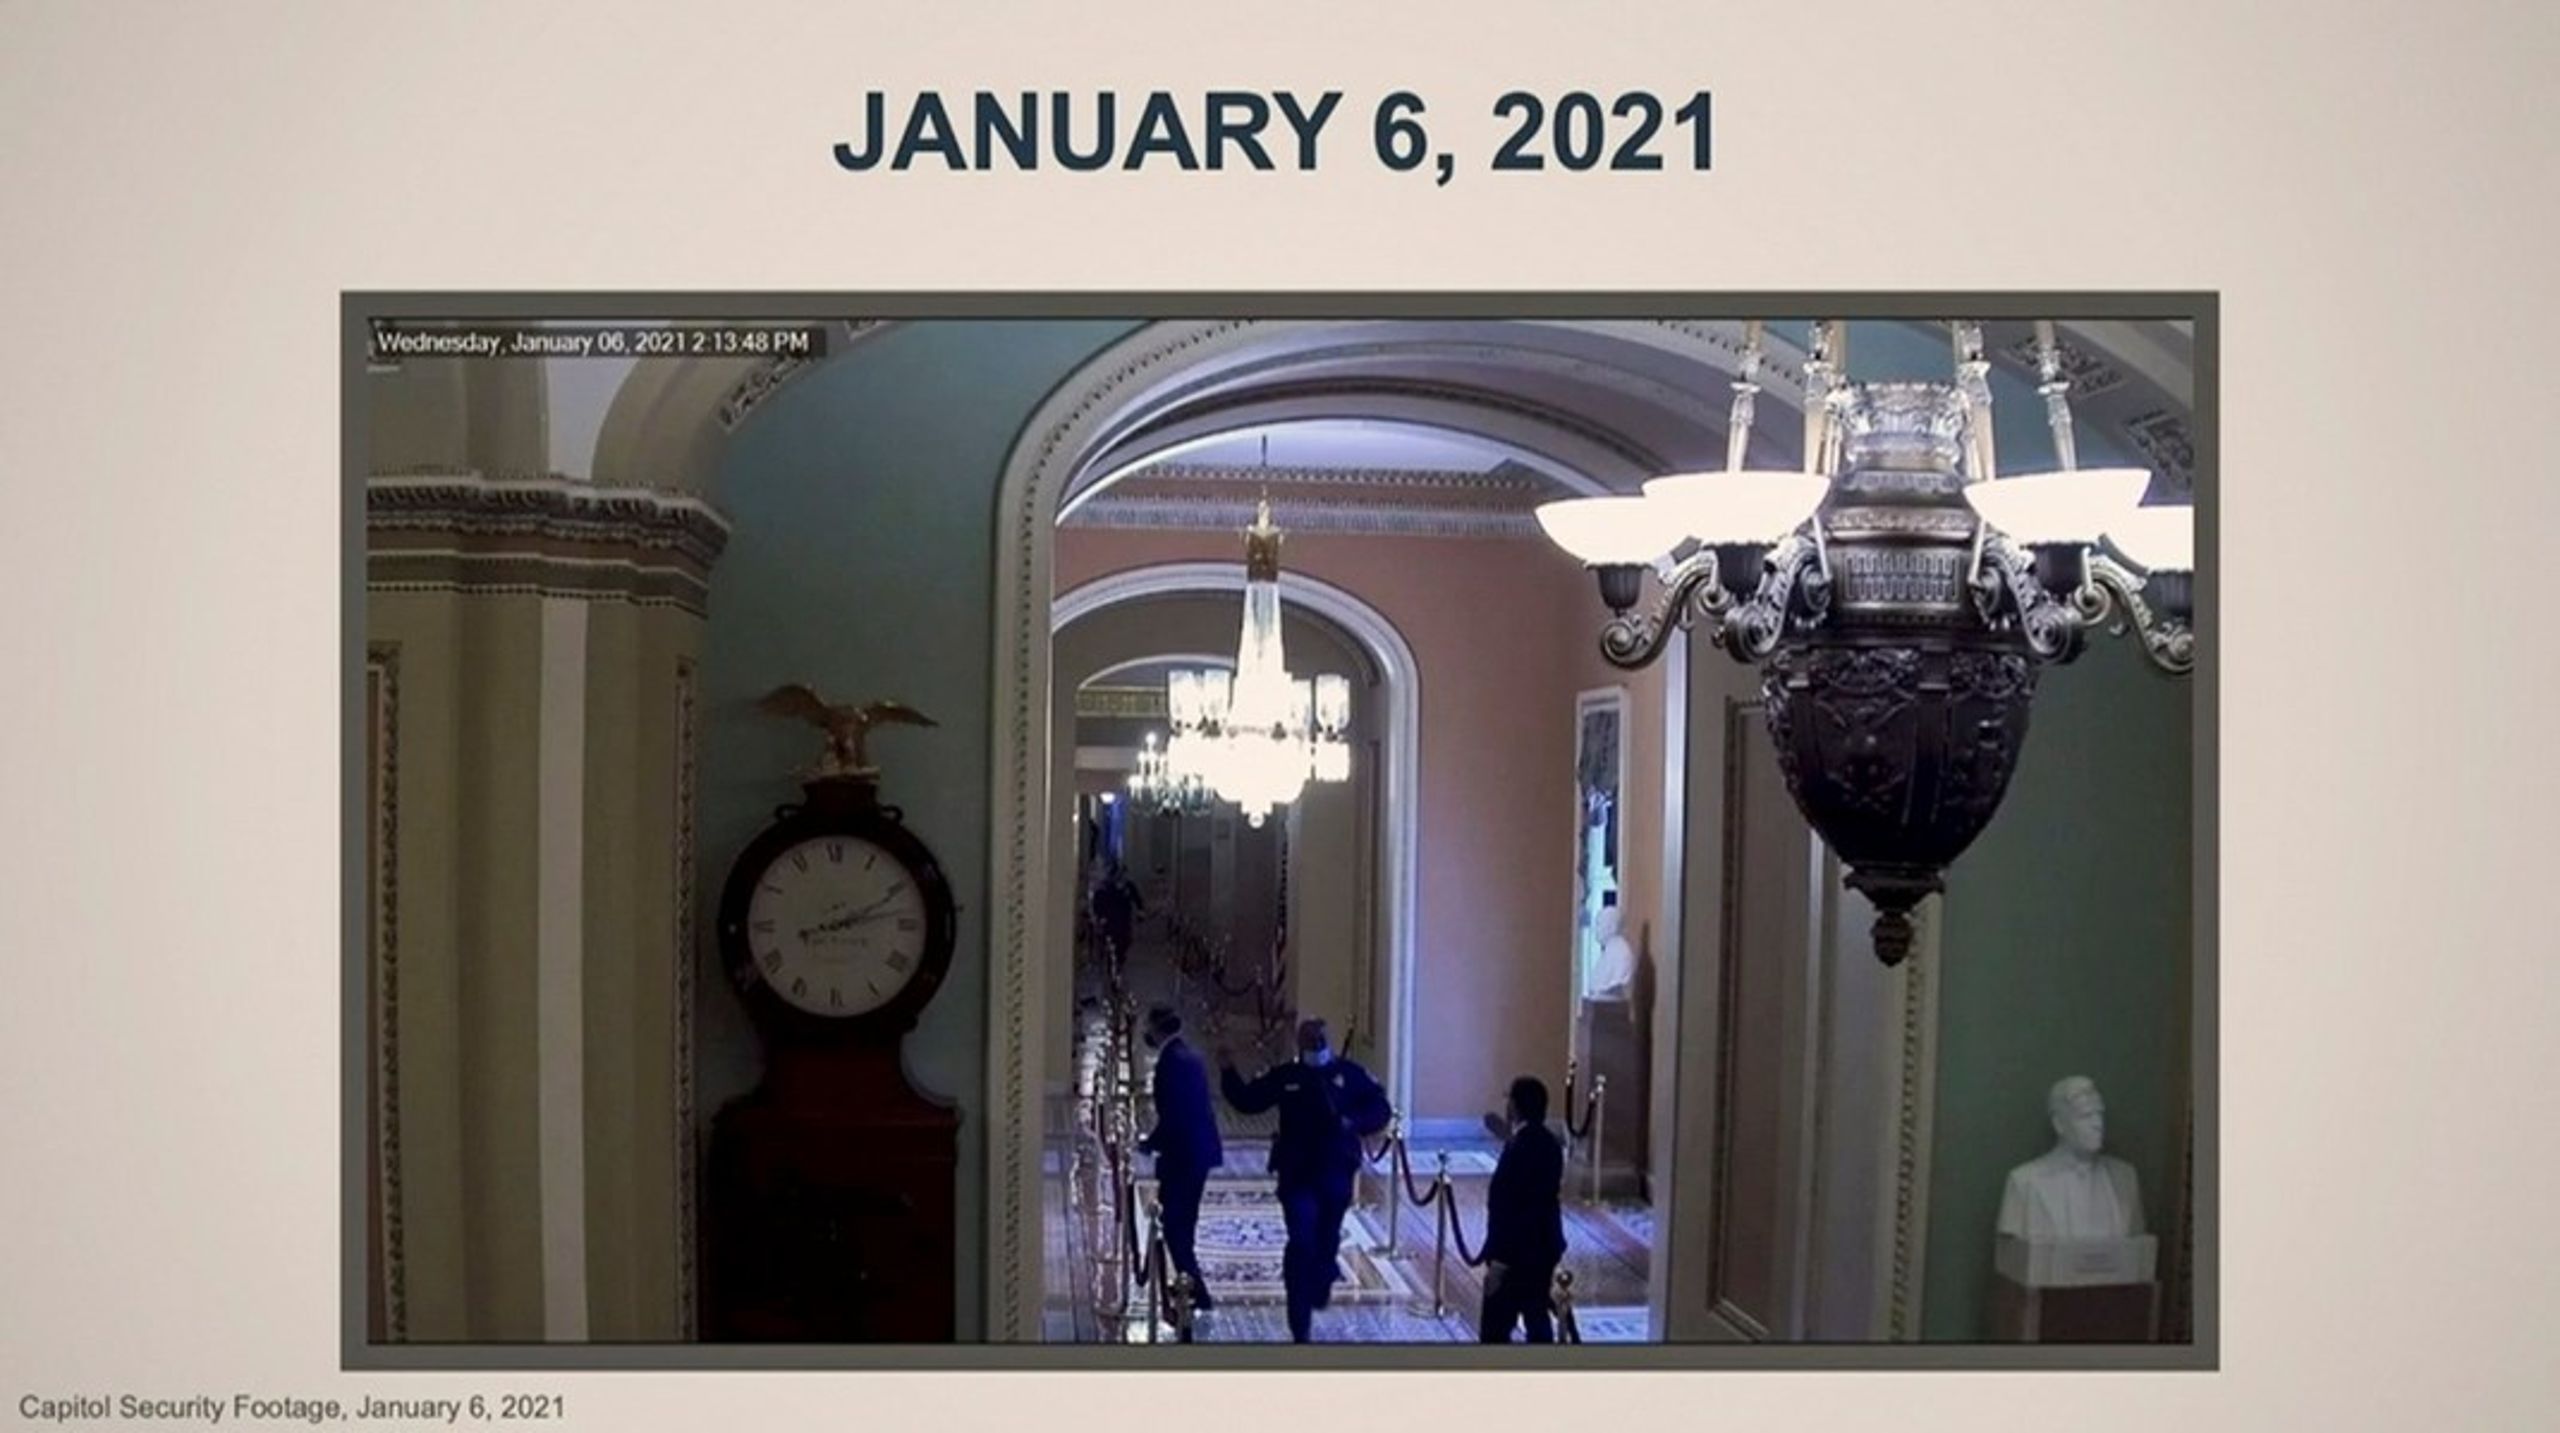 Videoovervågning i Senatet&nbsp;har fanget det øjeblik, hvor politimand Eugene Goodman får senator Mitt Romney i sikkerhed under angrebet på Kongressen 6. januar.